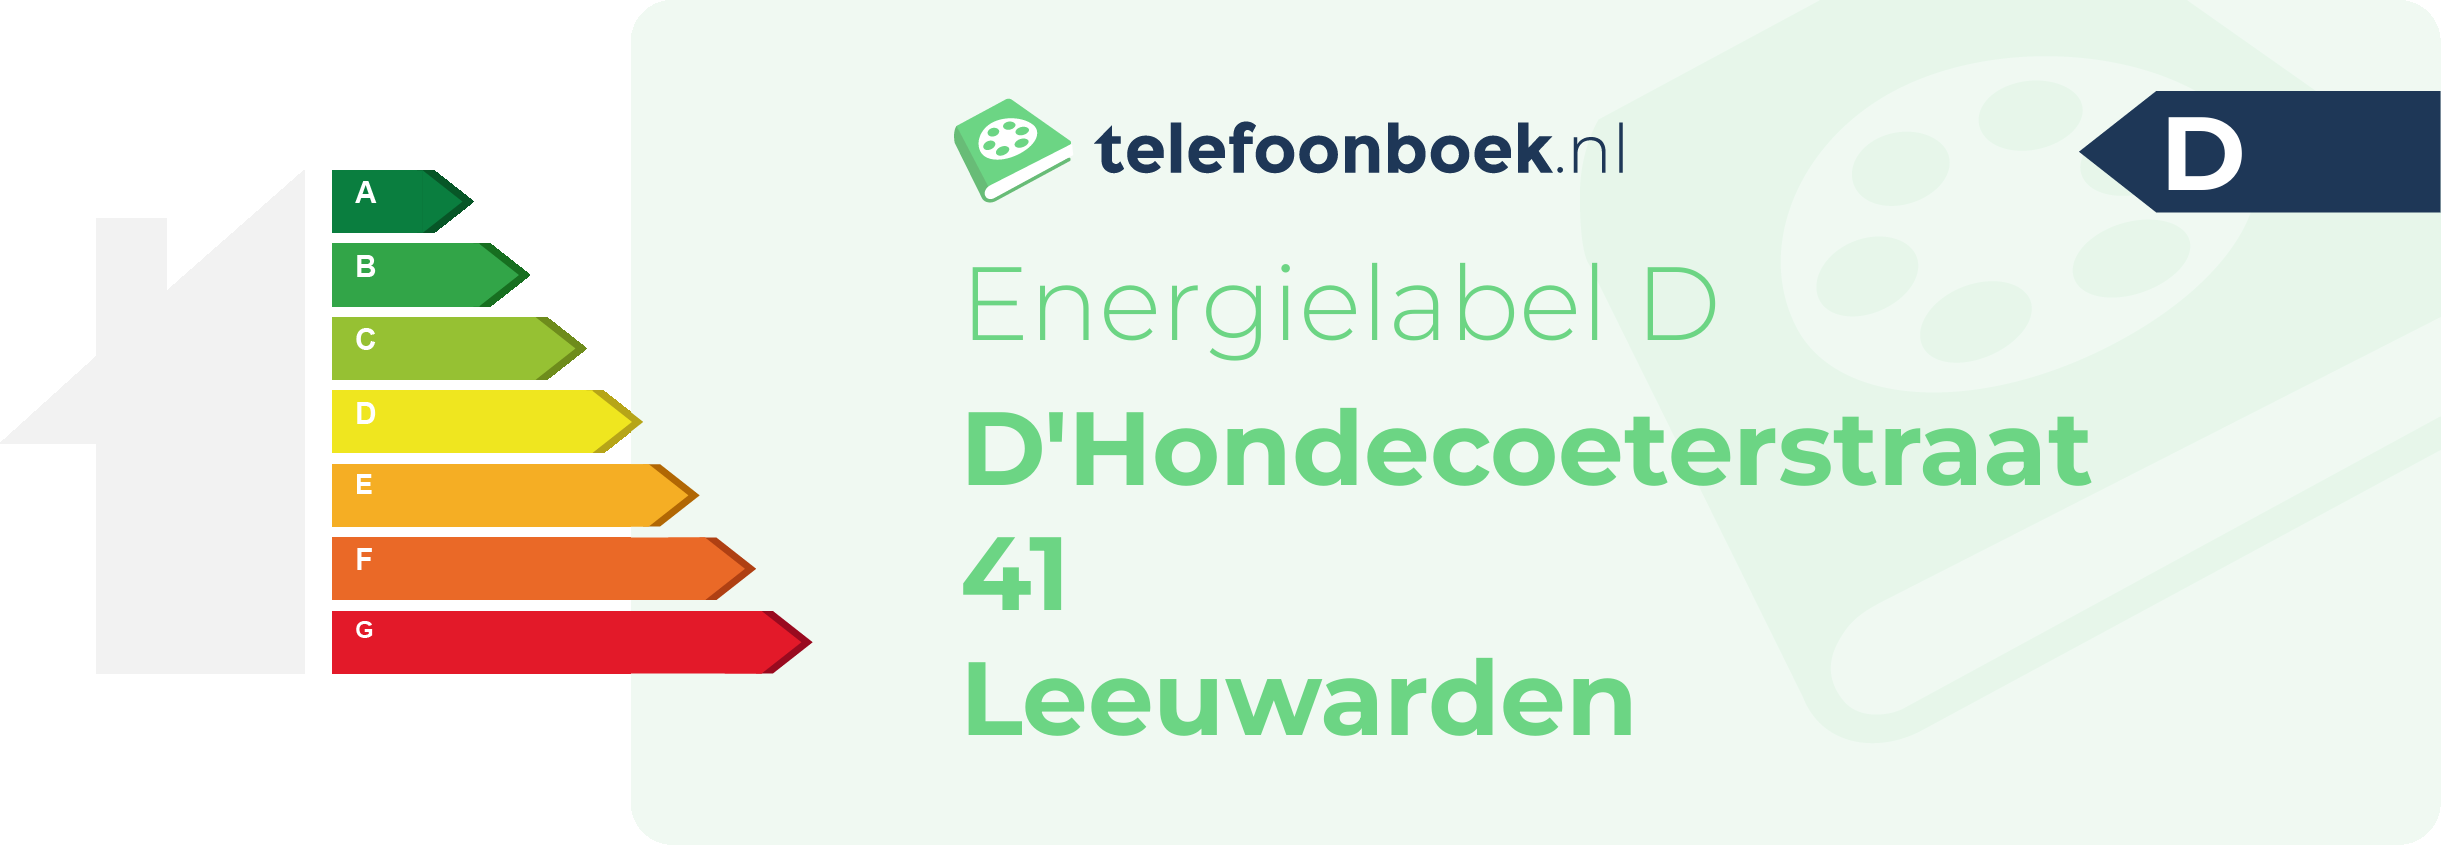 Energielabel D'Hondecoeterstraat 41 Leeuwarden